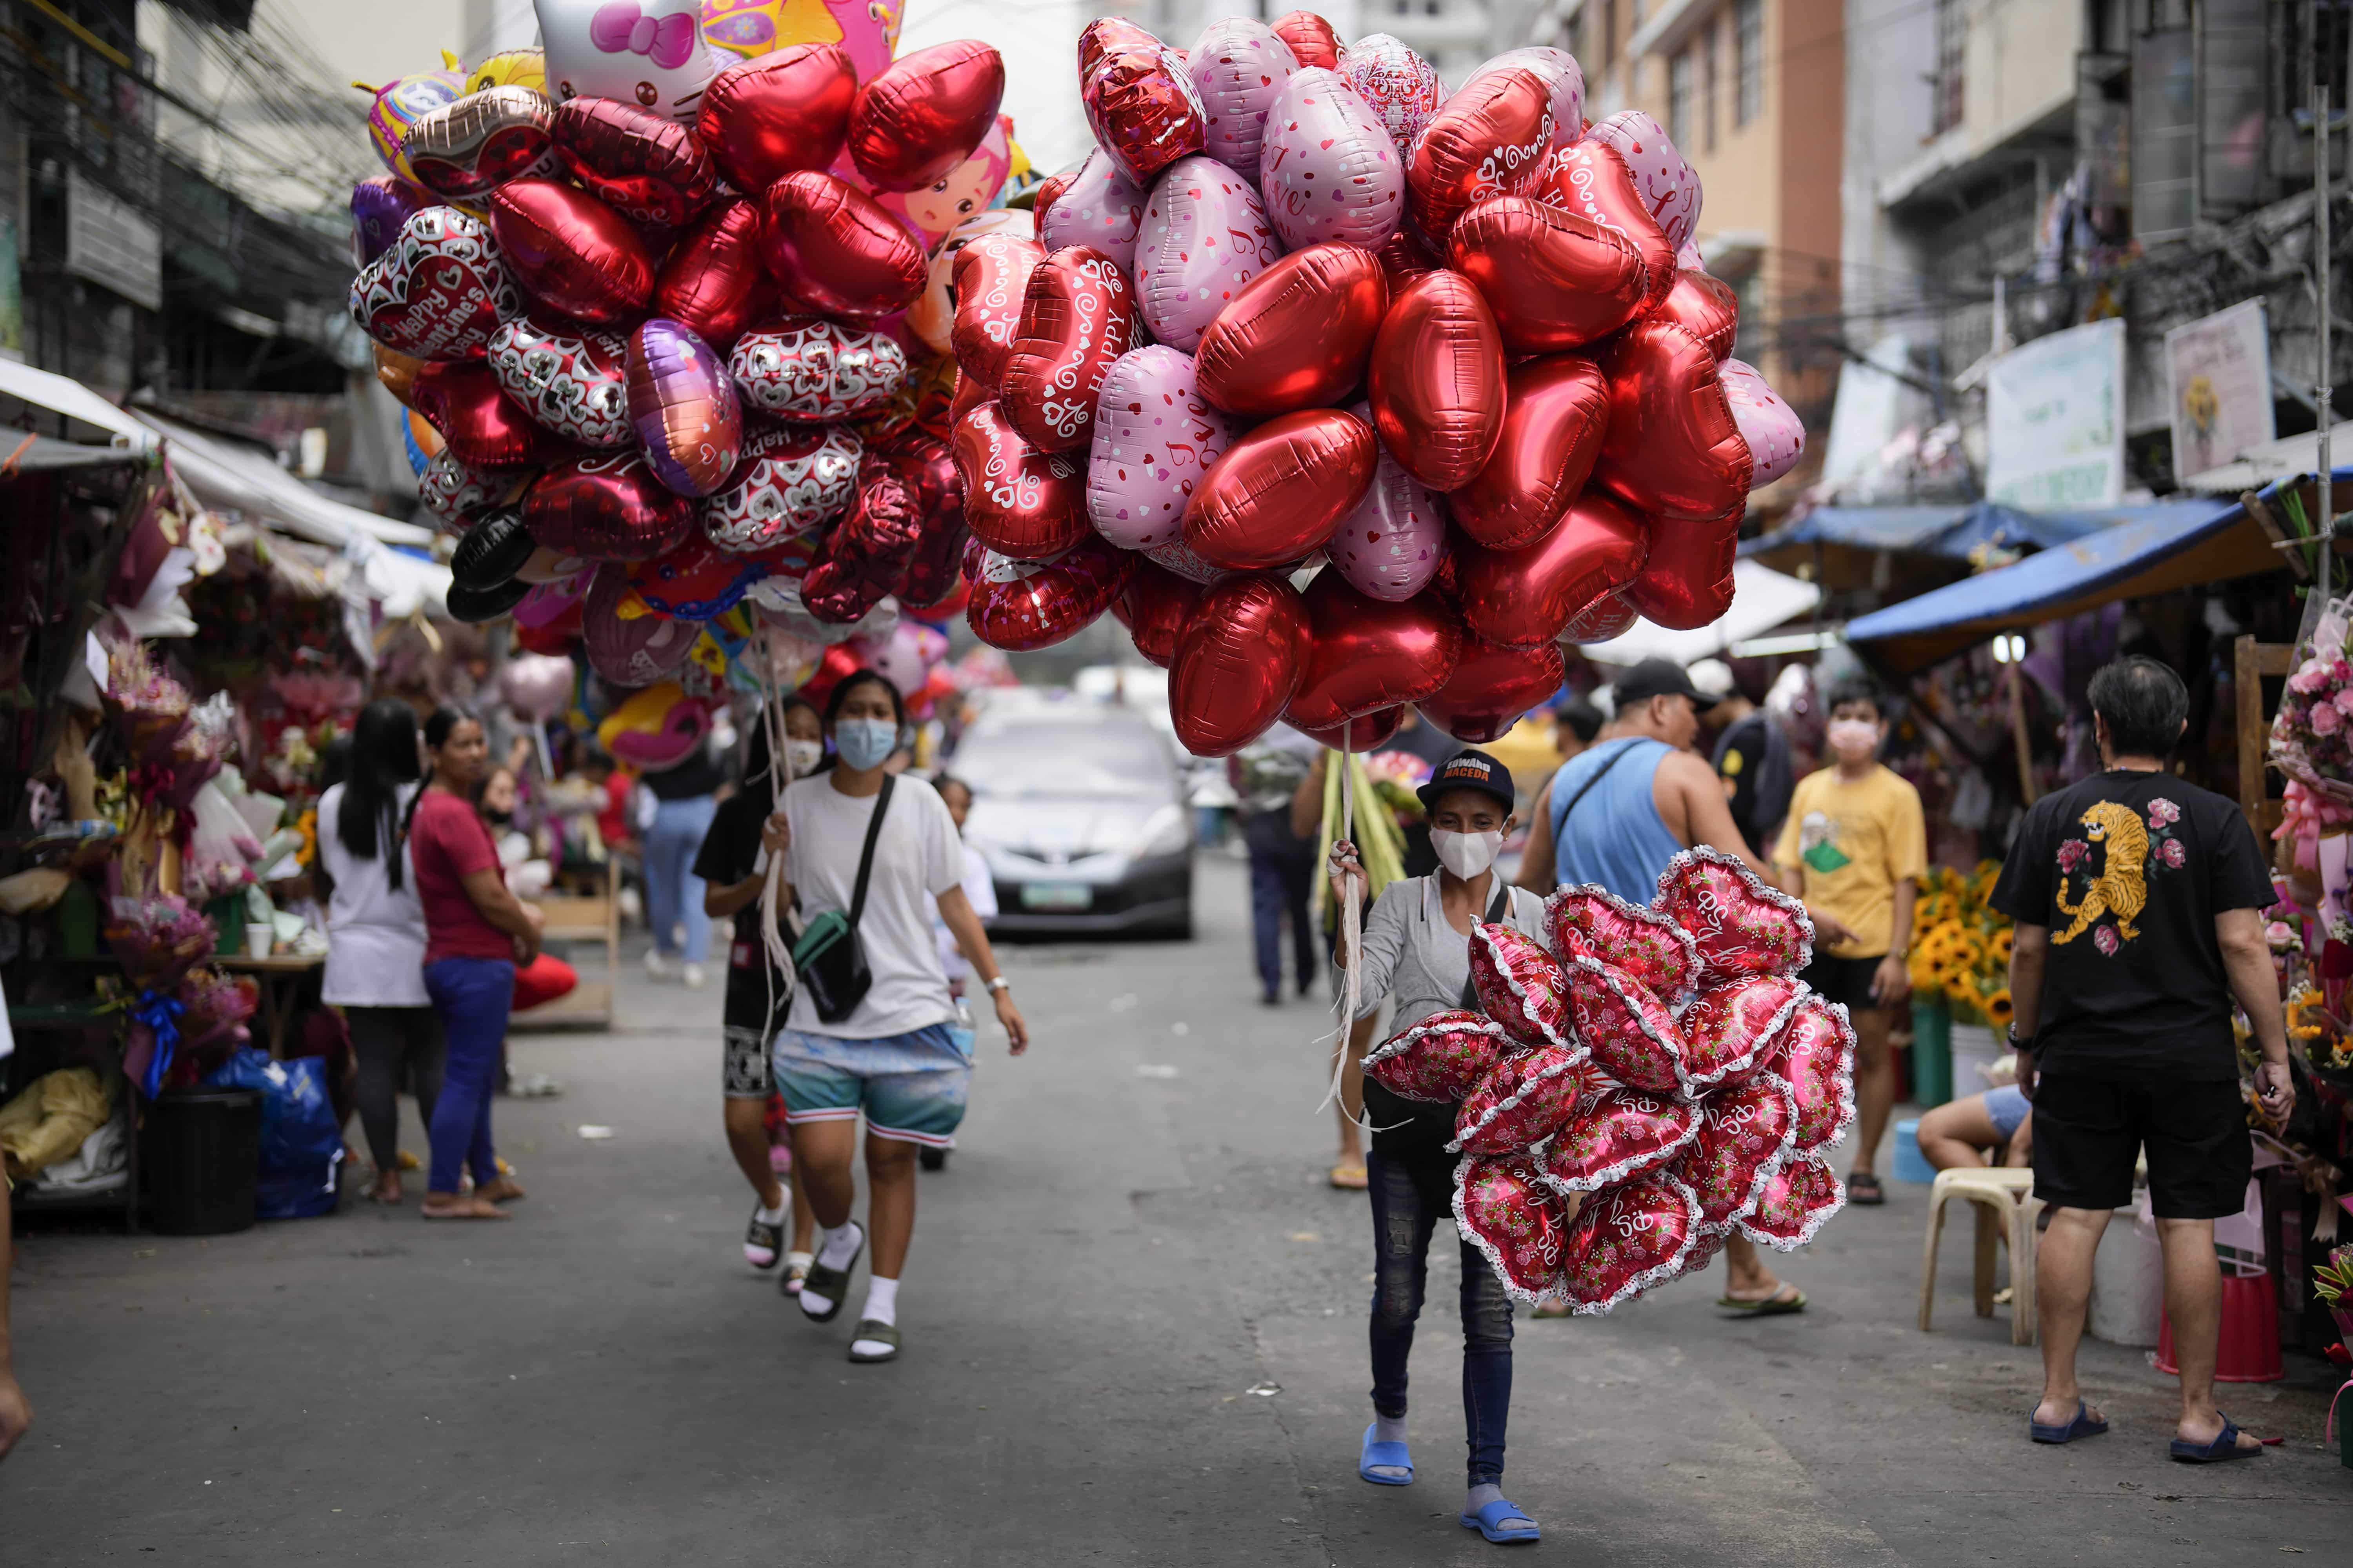 Mujeres venden globos con forma de corazón en un mercado de flores en Manila, Filipinas, el lunes 13 de febrero de 2023. Los precios de las flores han aumentado debido a la gran demanda un día antes del Día de San Valentín.